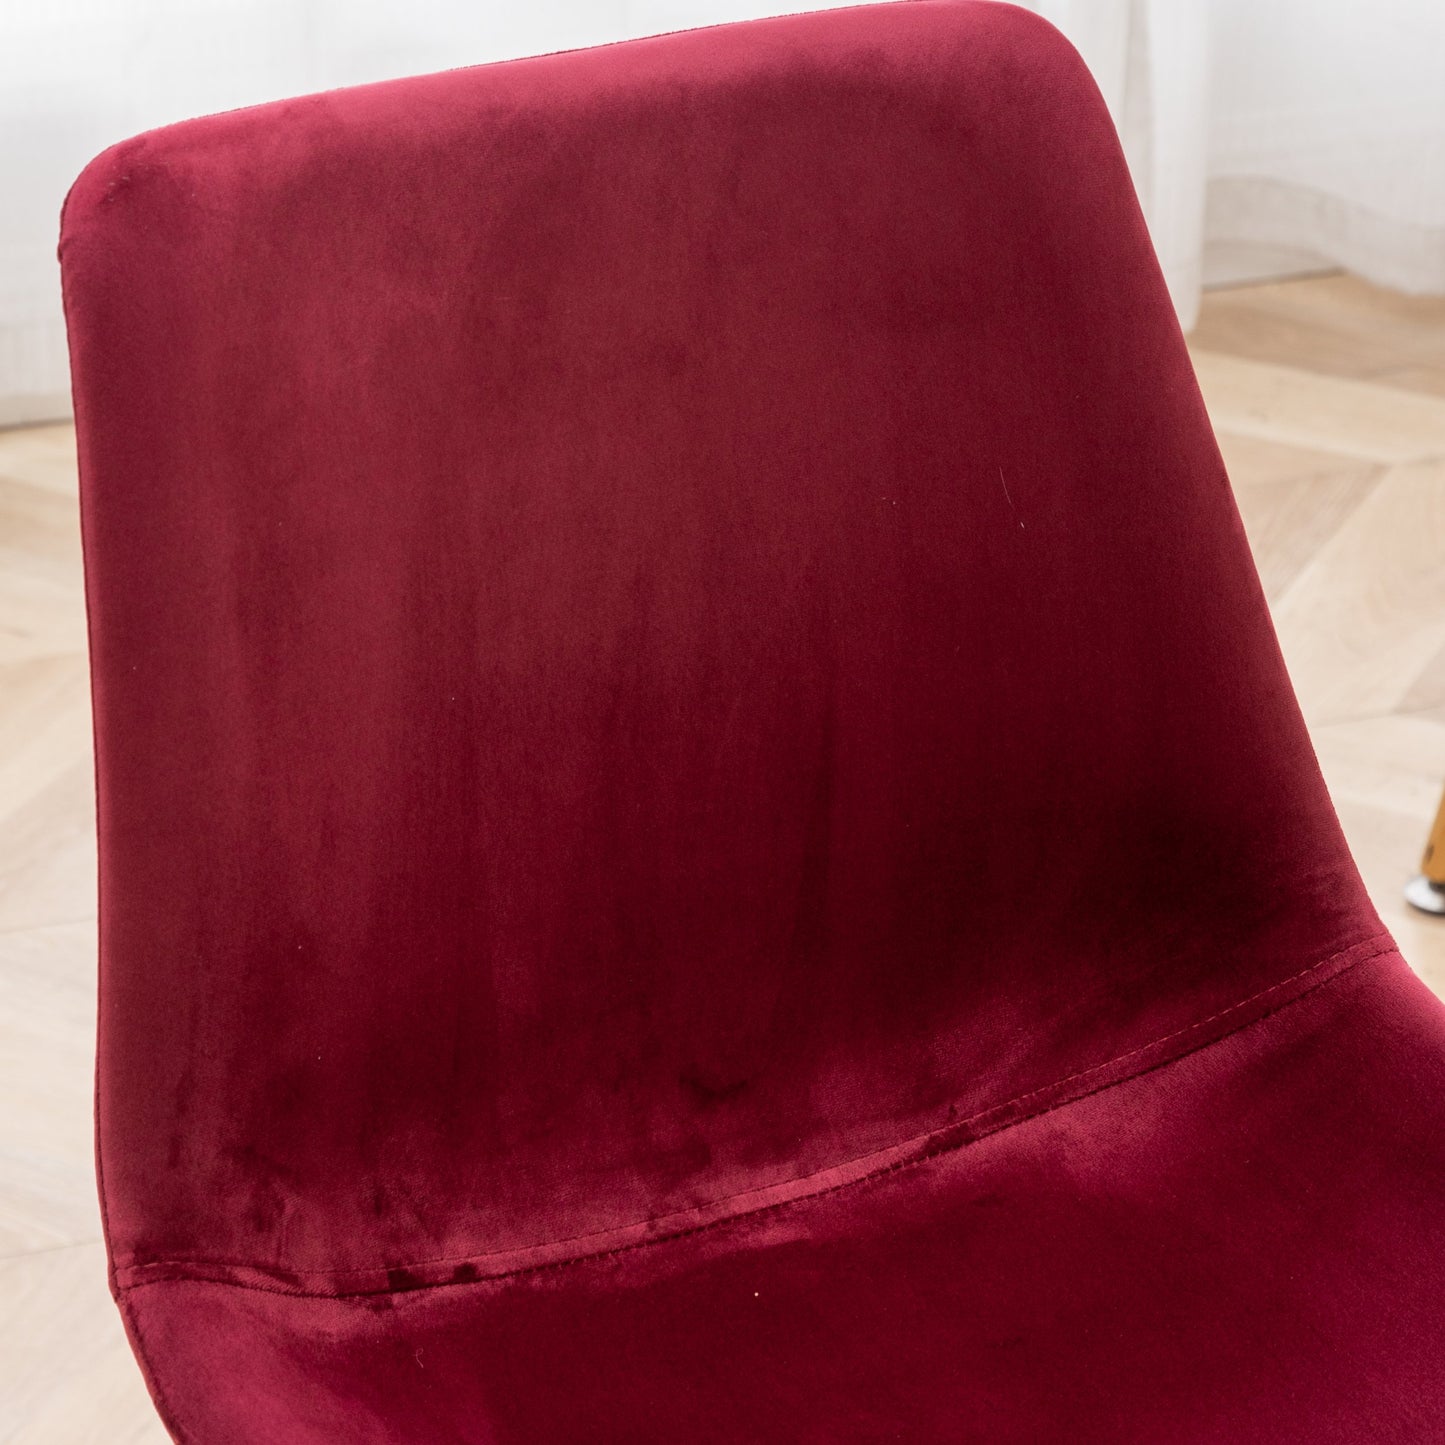 Roundhill Furniture Aufurr Modern Velvet Dining Chair, Set of 2, Red